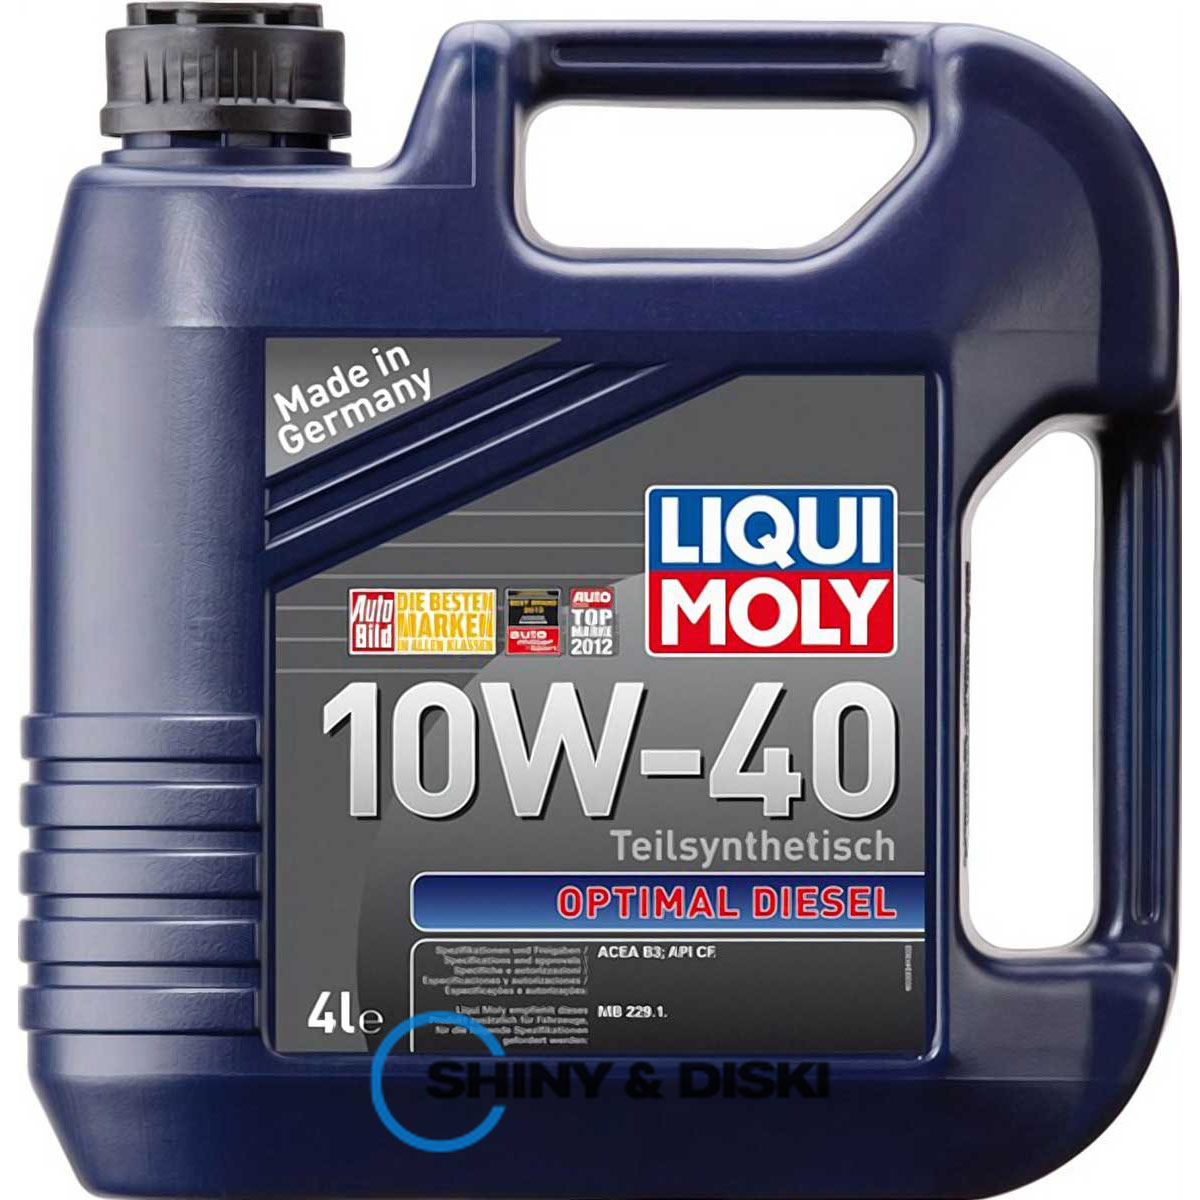 liqui moly optimal diesel